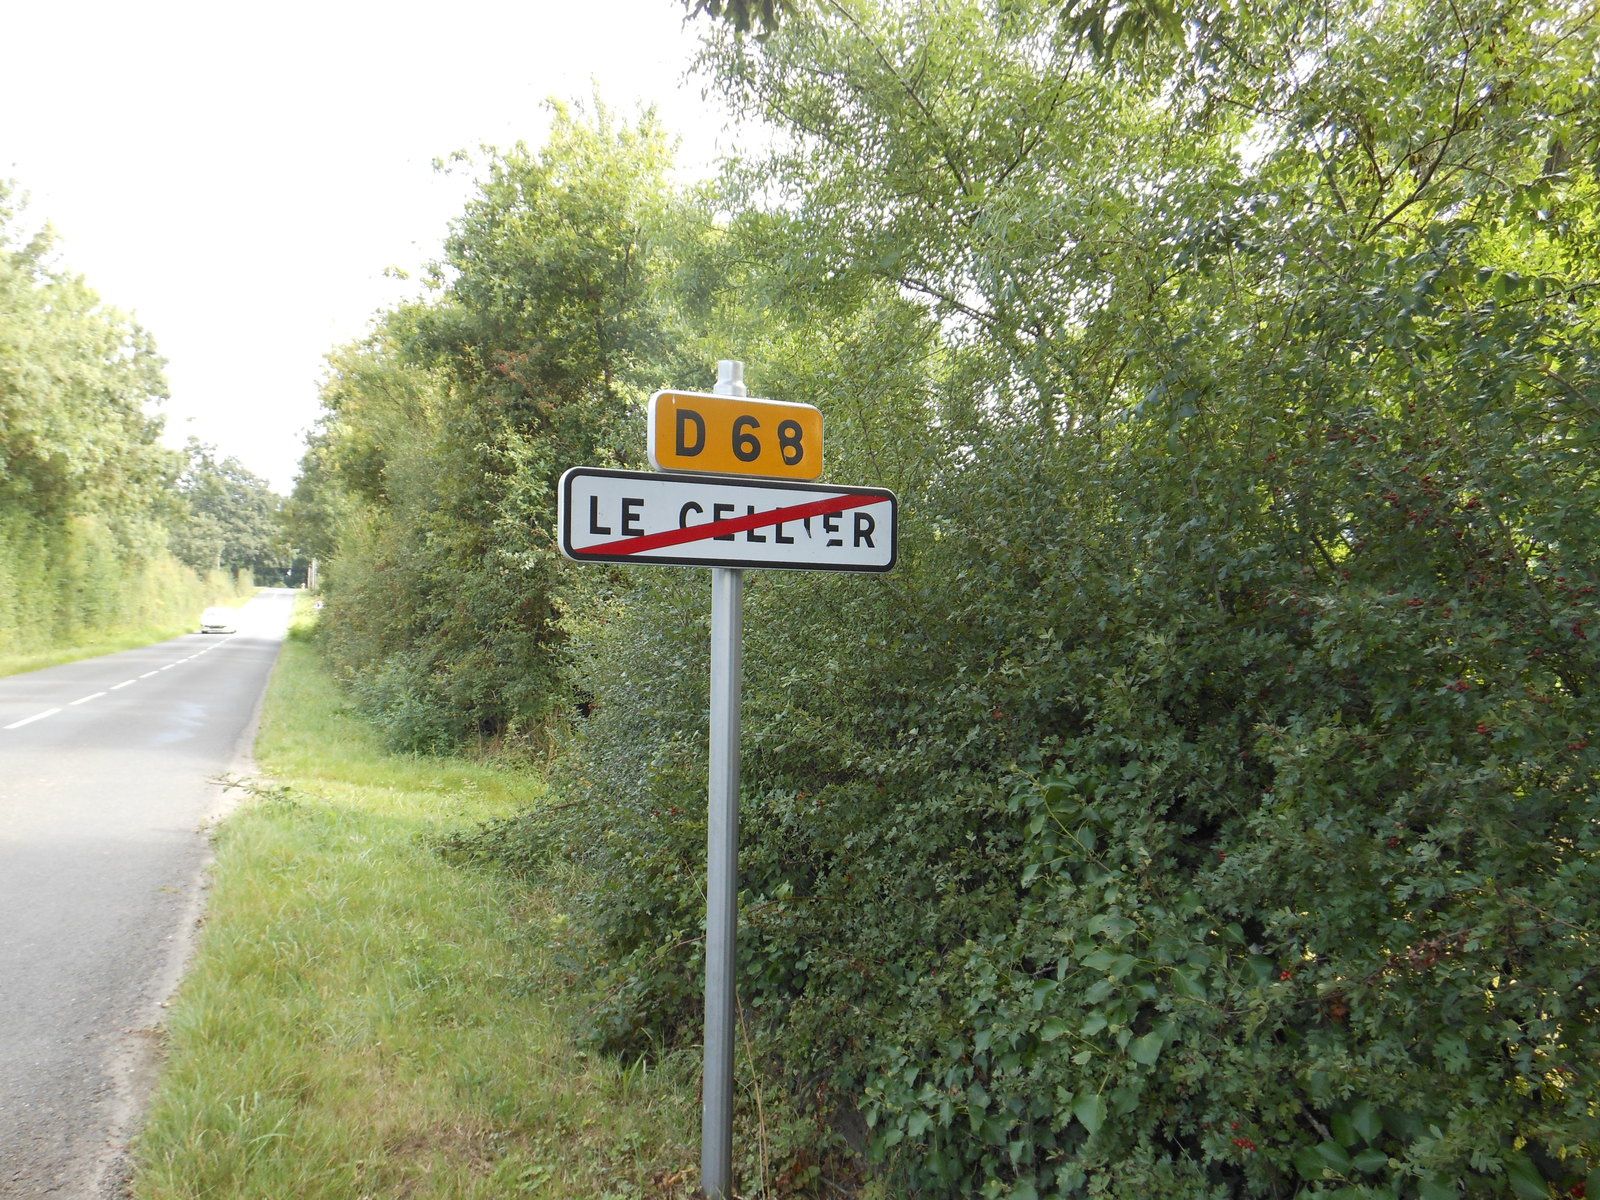 LE CELLIER (44) Village de Louis DE FUNES - 21 AOUT 2014 (PHOTOS)